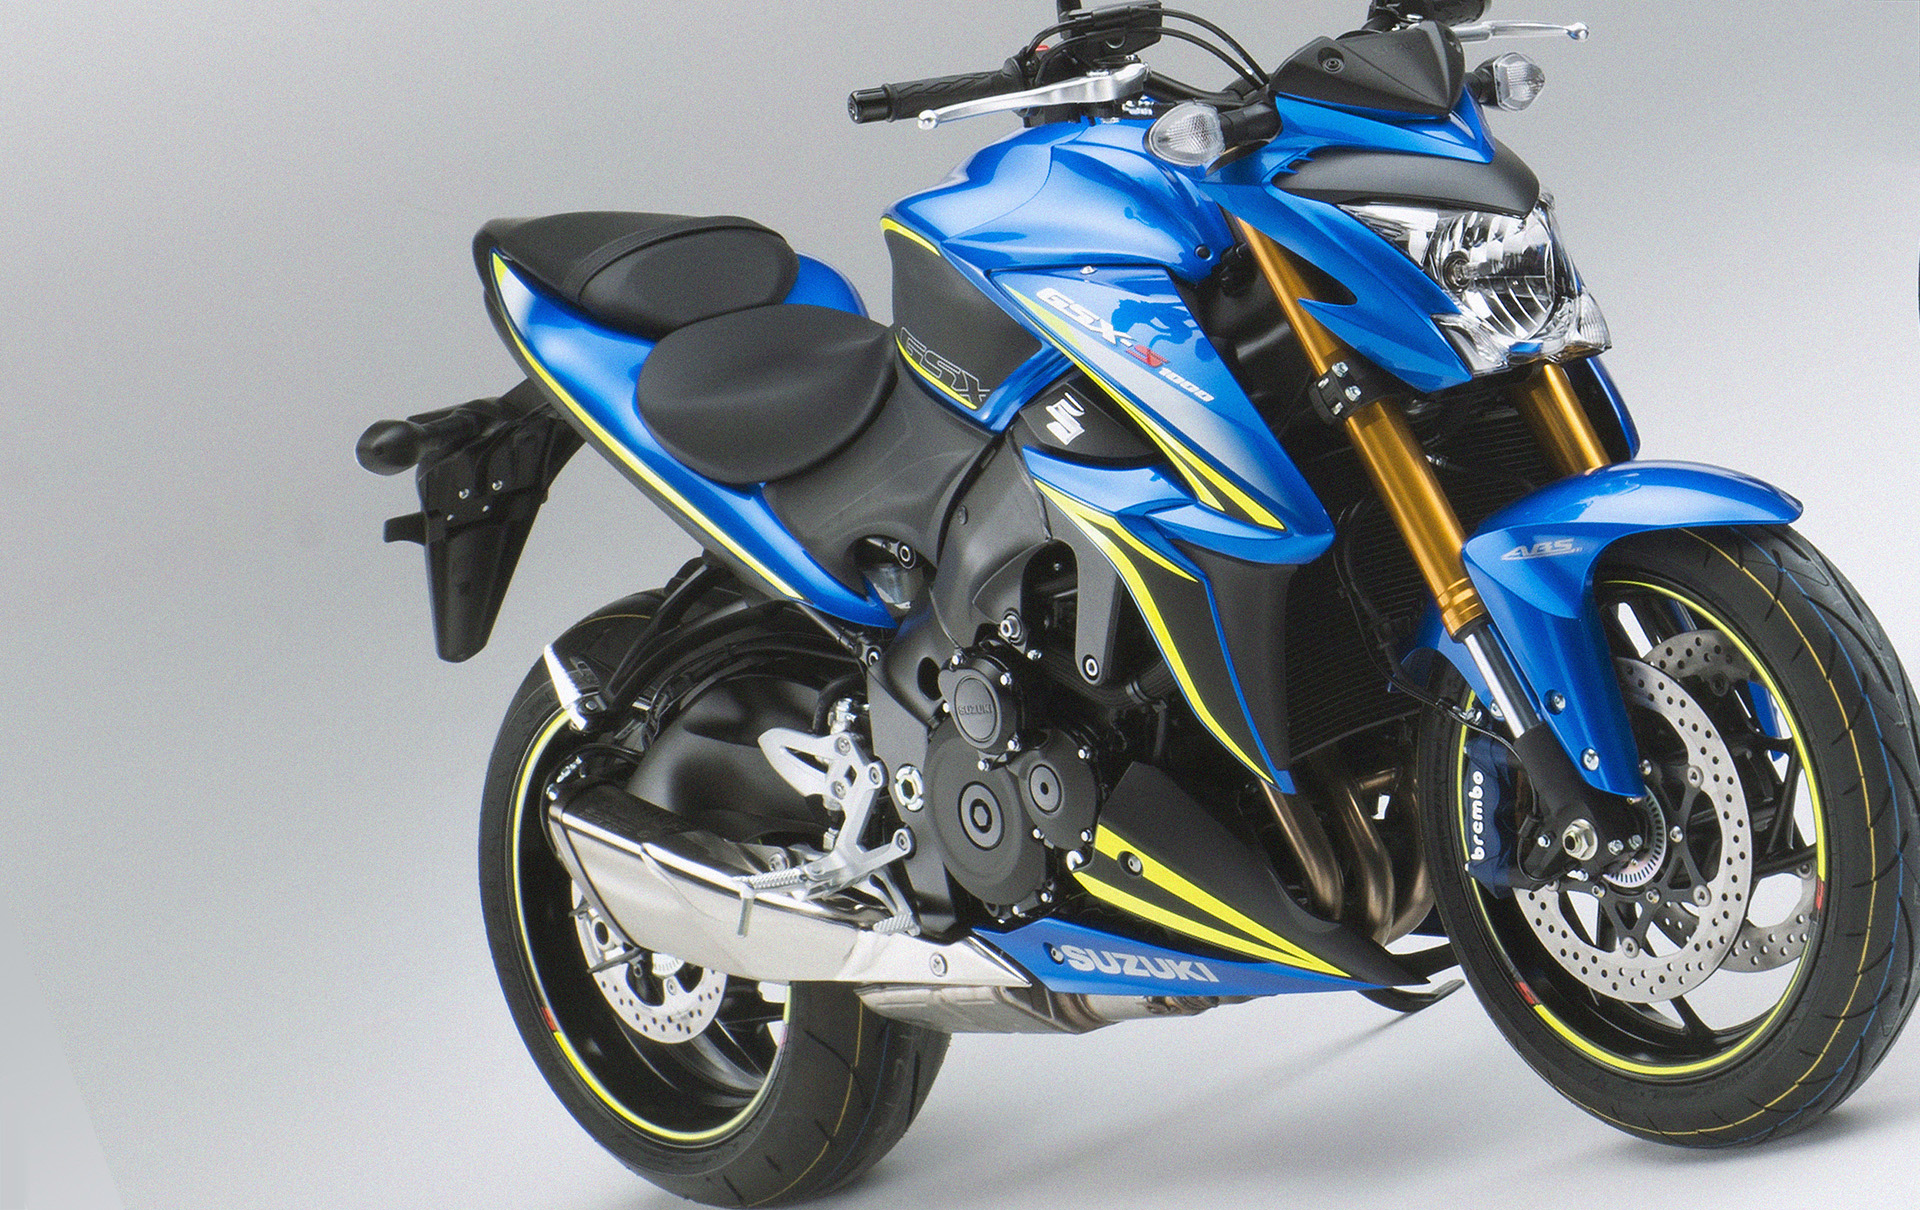 Suzuki announces GSX-S1000 Carbon and GSX-S1000F Tour special edition models